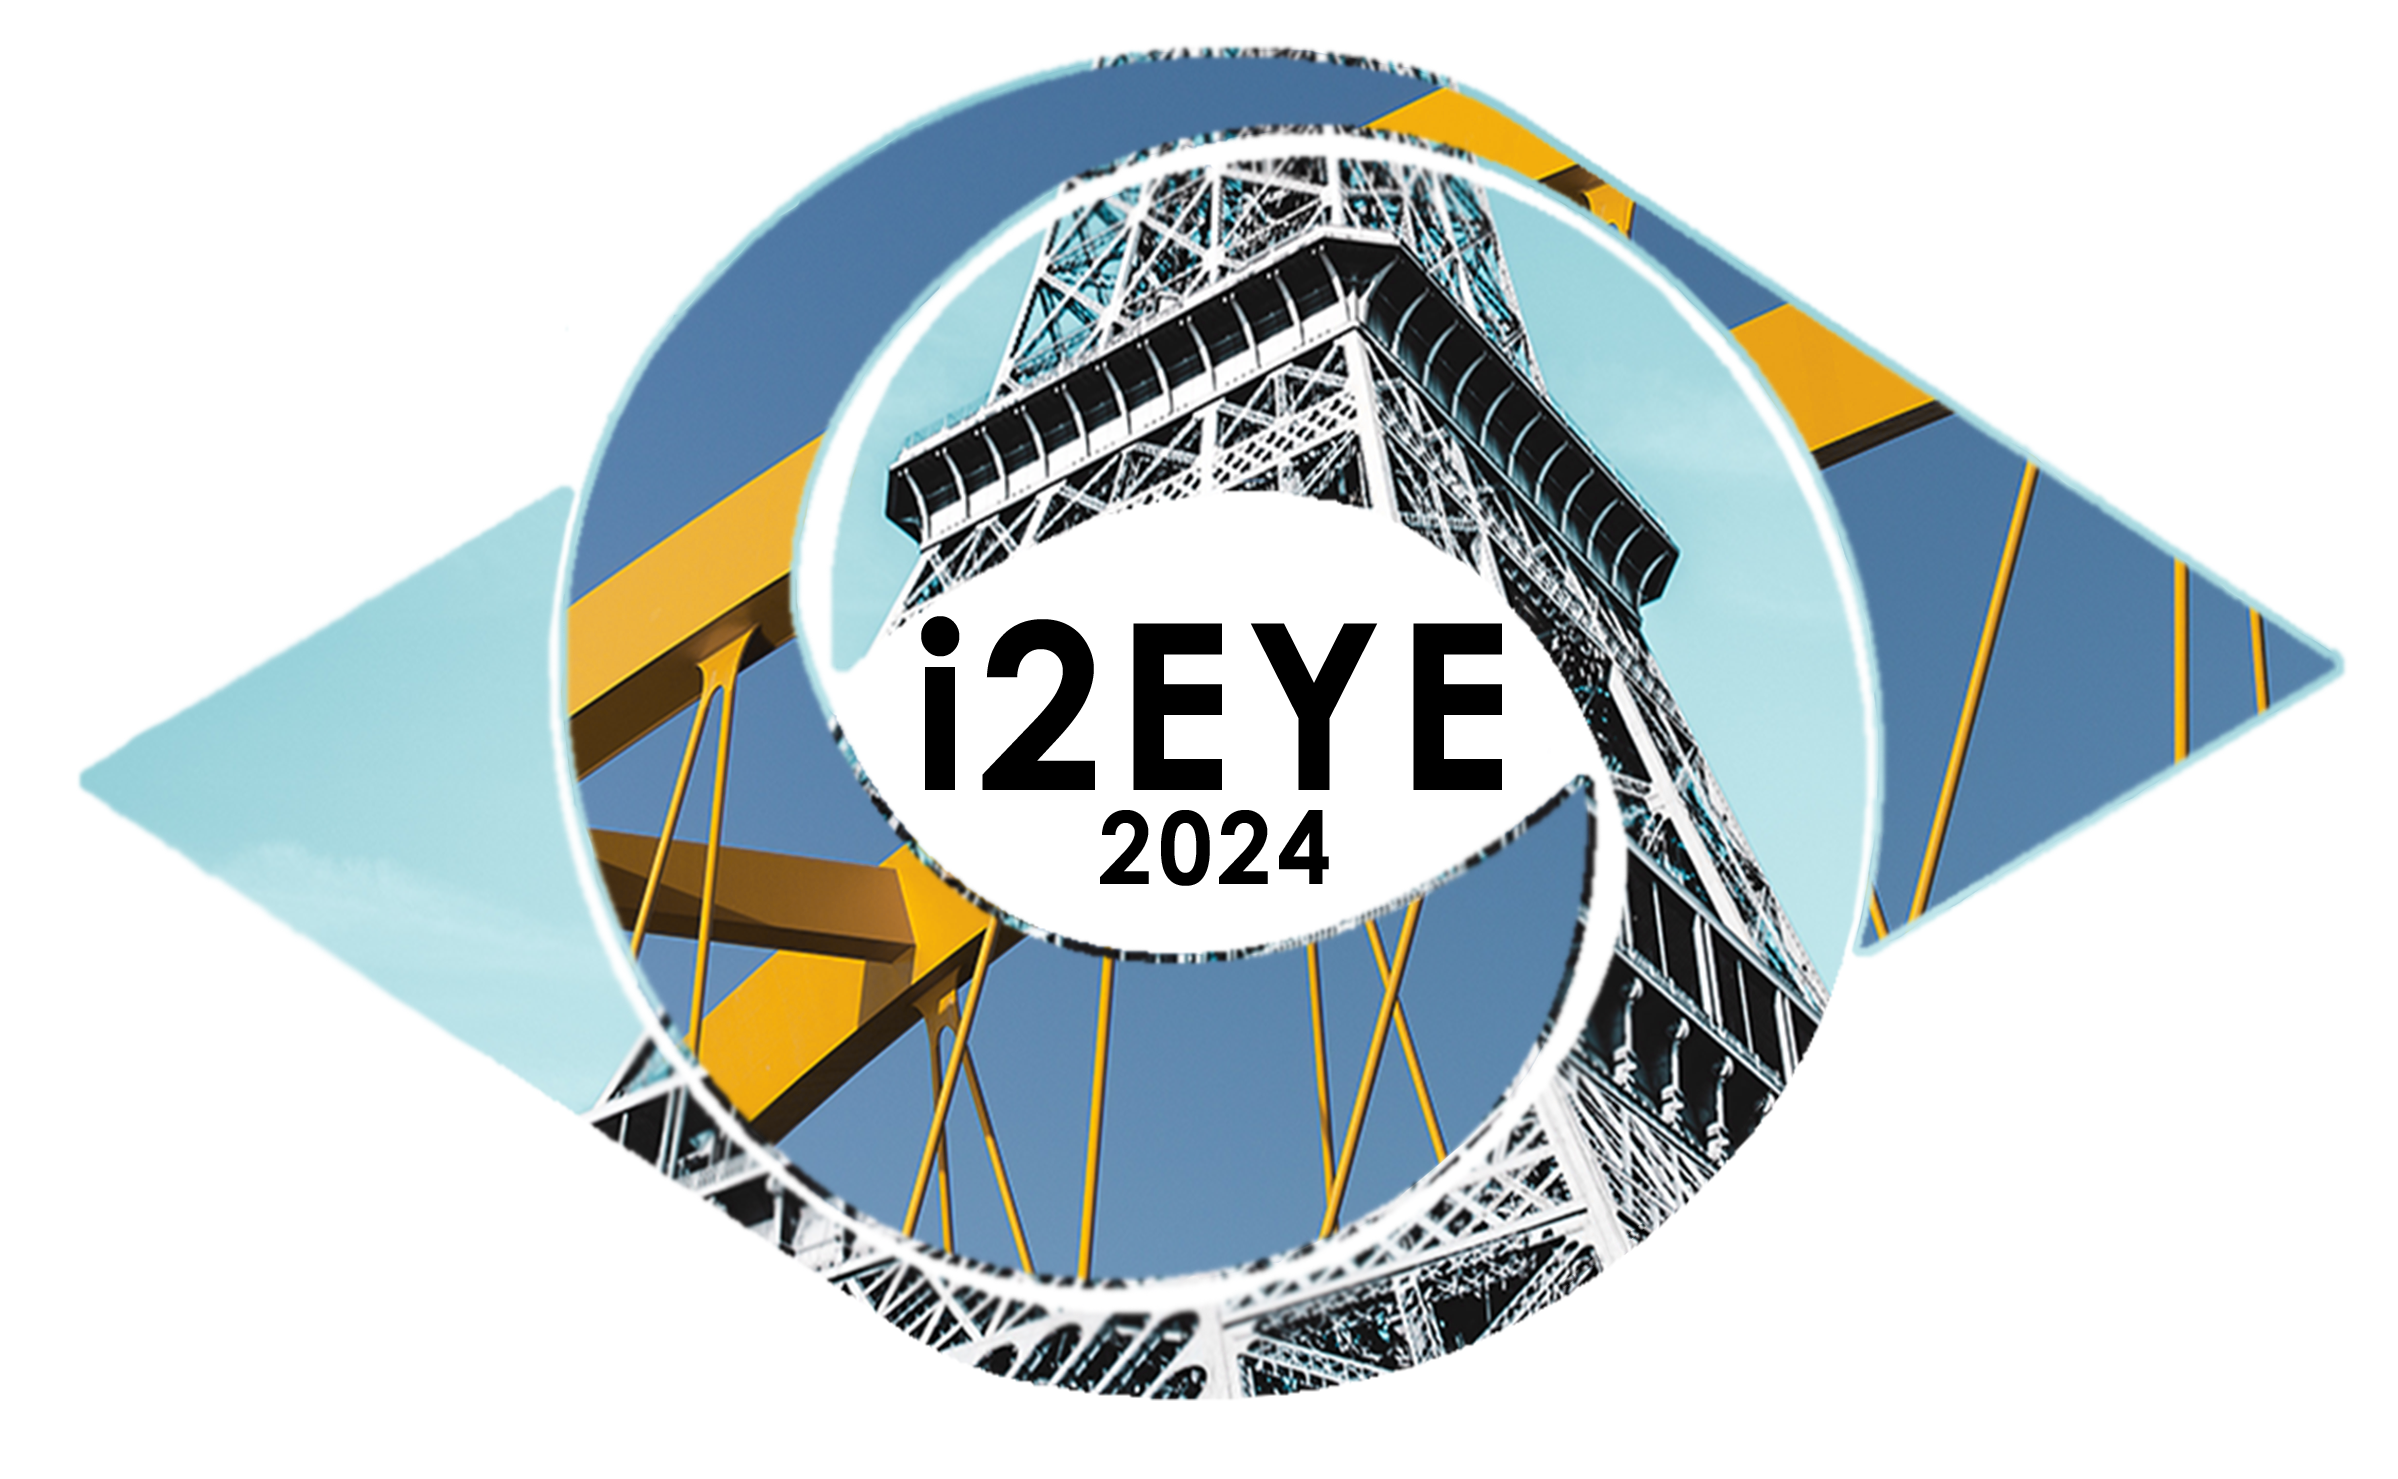 300dpi_i2eye logo 2024